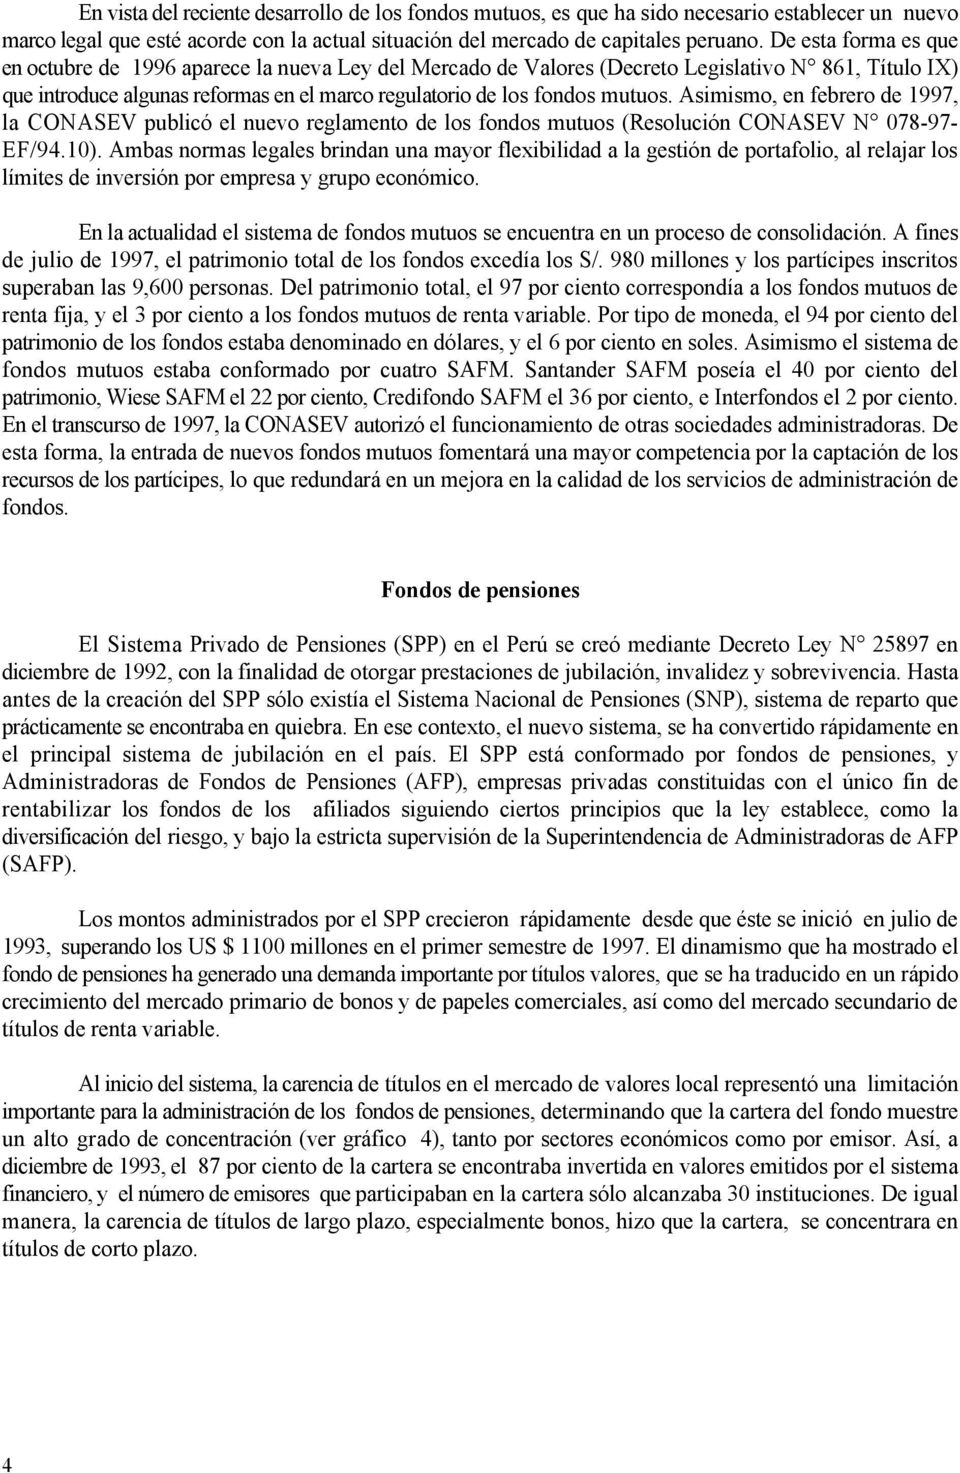 Asimismo, en febrero de 1997, la CONASEV publicó el nuevo reglamento de los fondos mutuos (Resolución CONASEV N 78-97- EF/94.1).